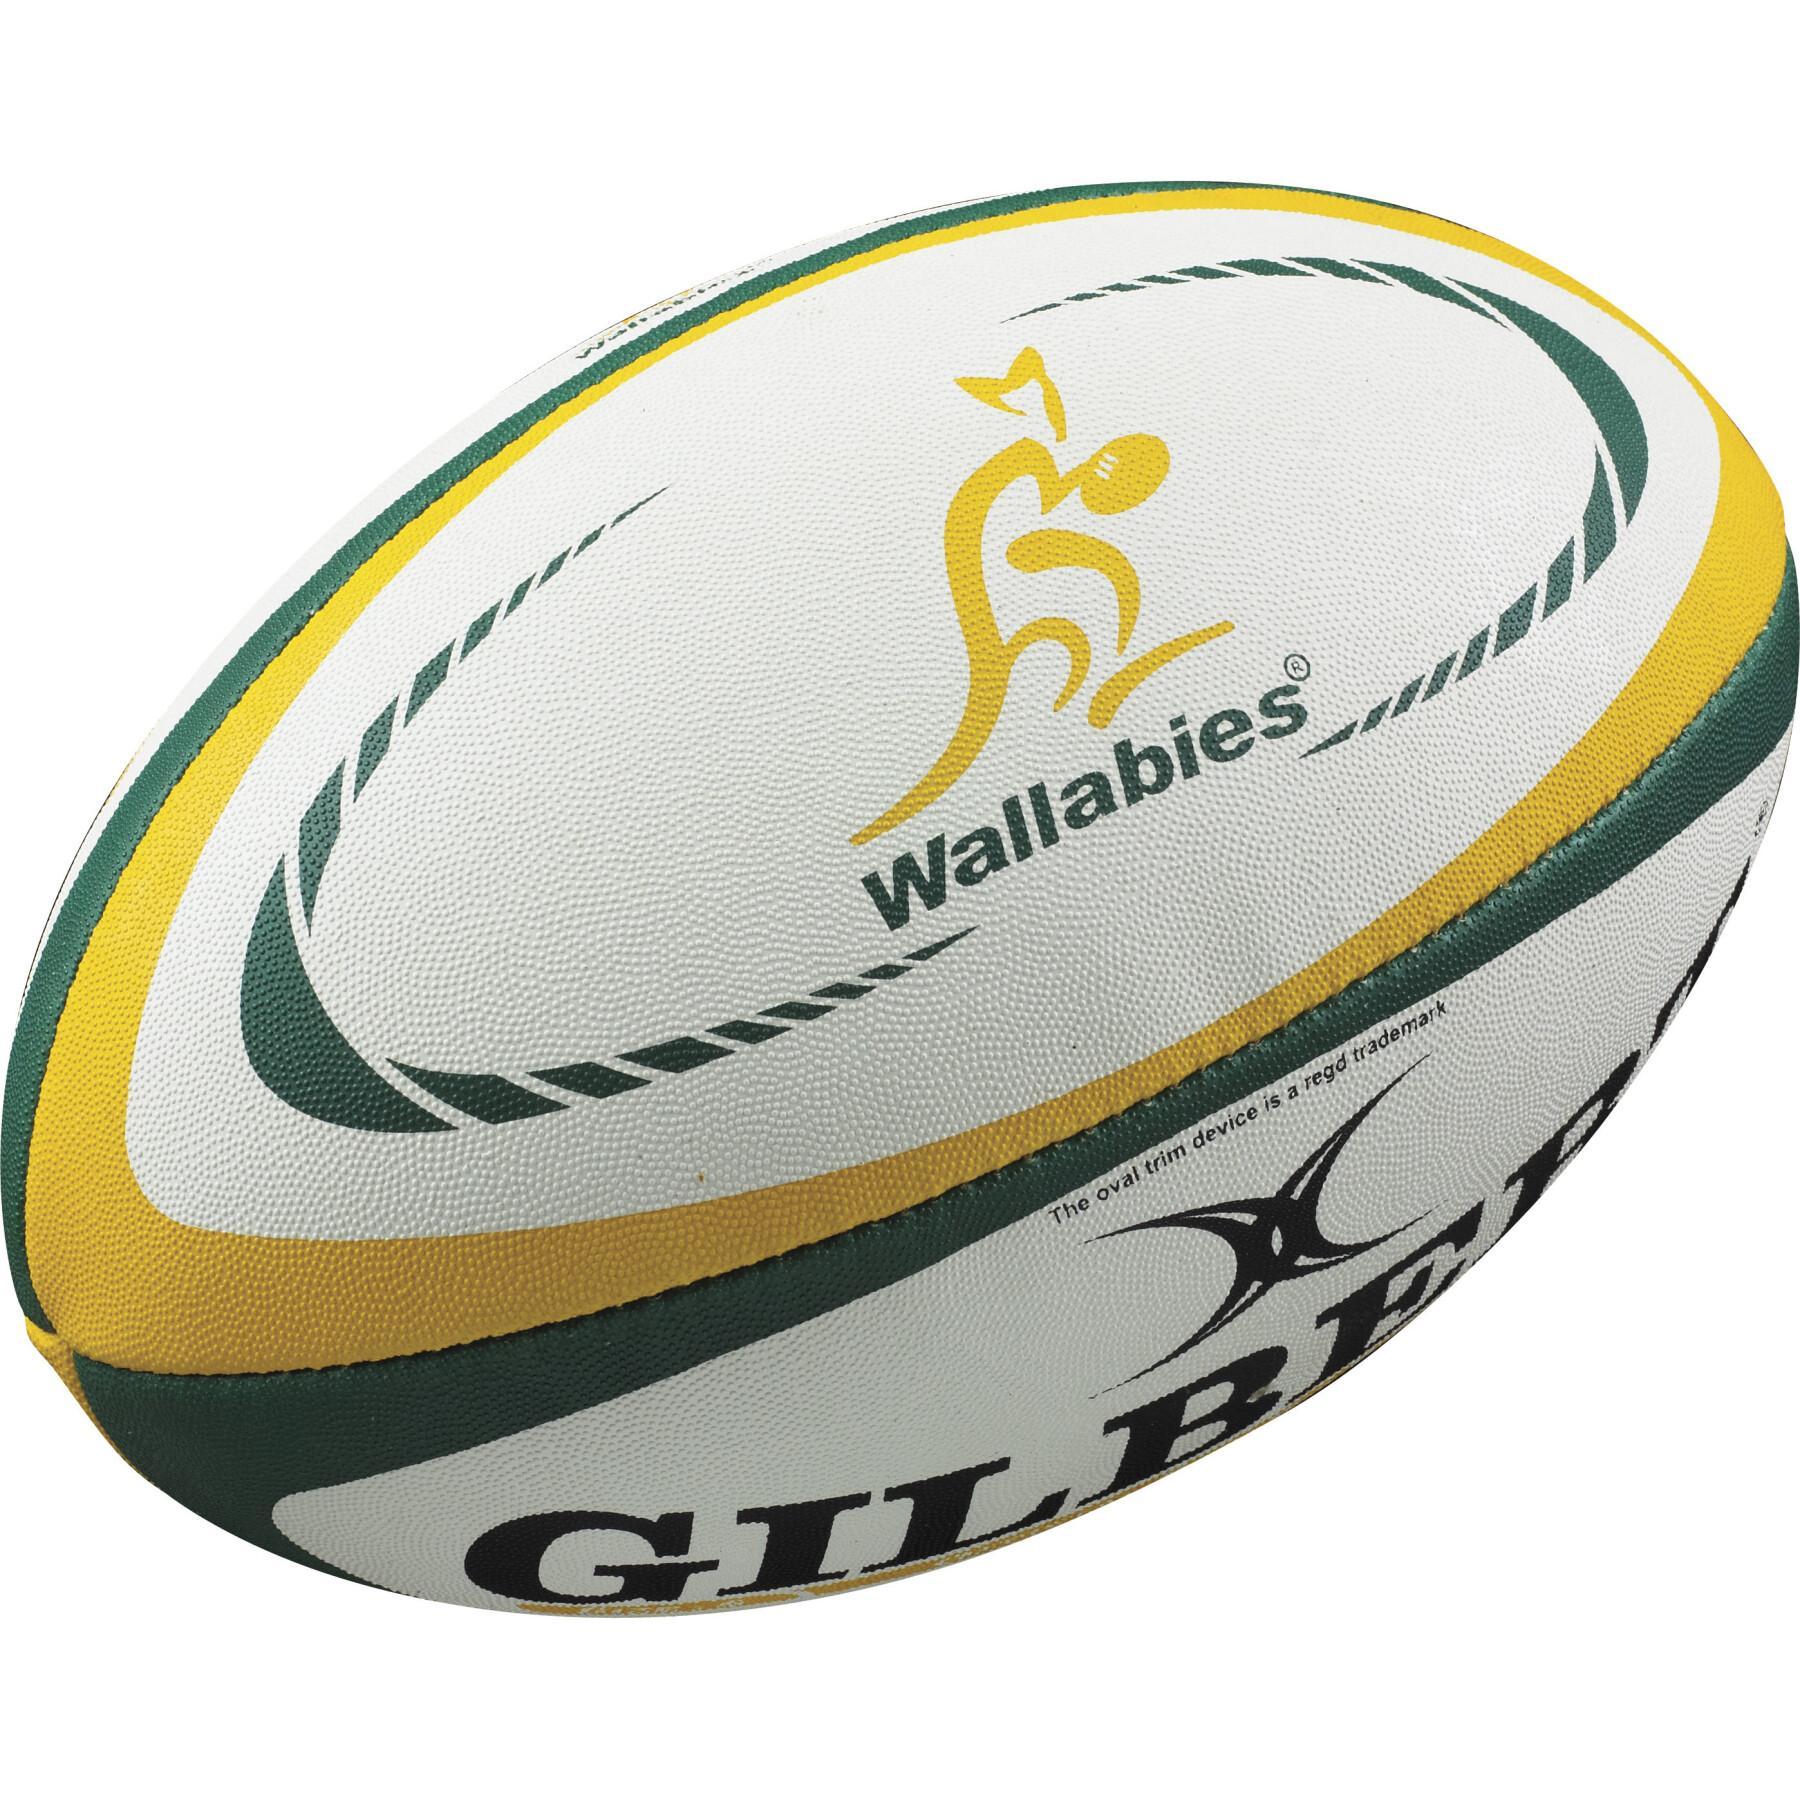 Nachbildung eines Rugbyballs Gilbert Australie (taille 5)